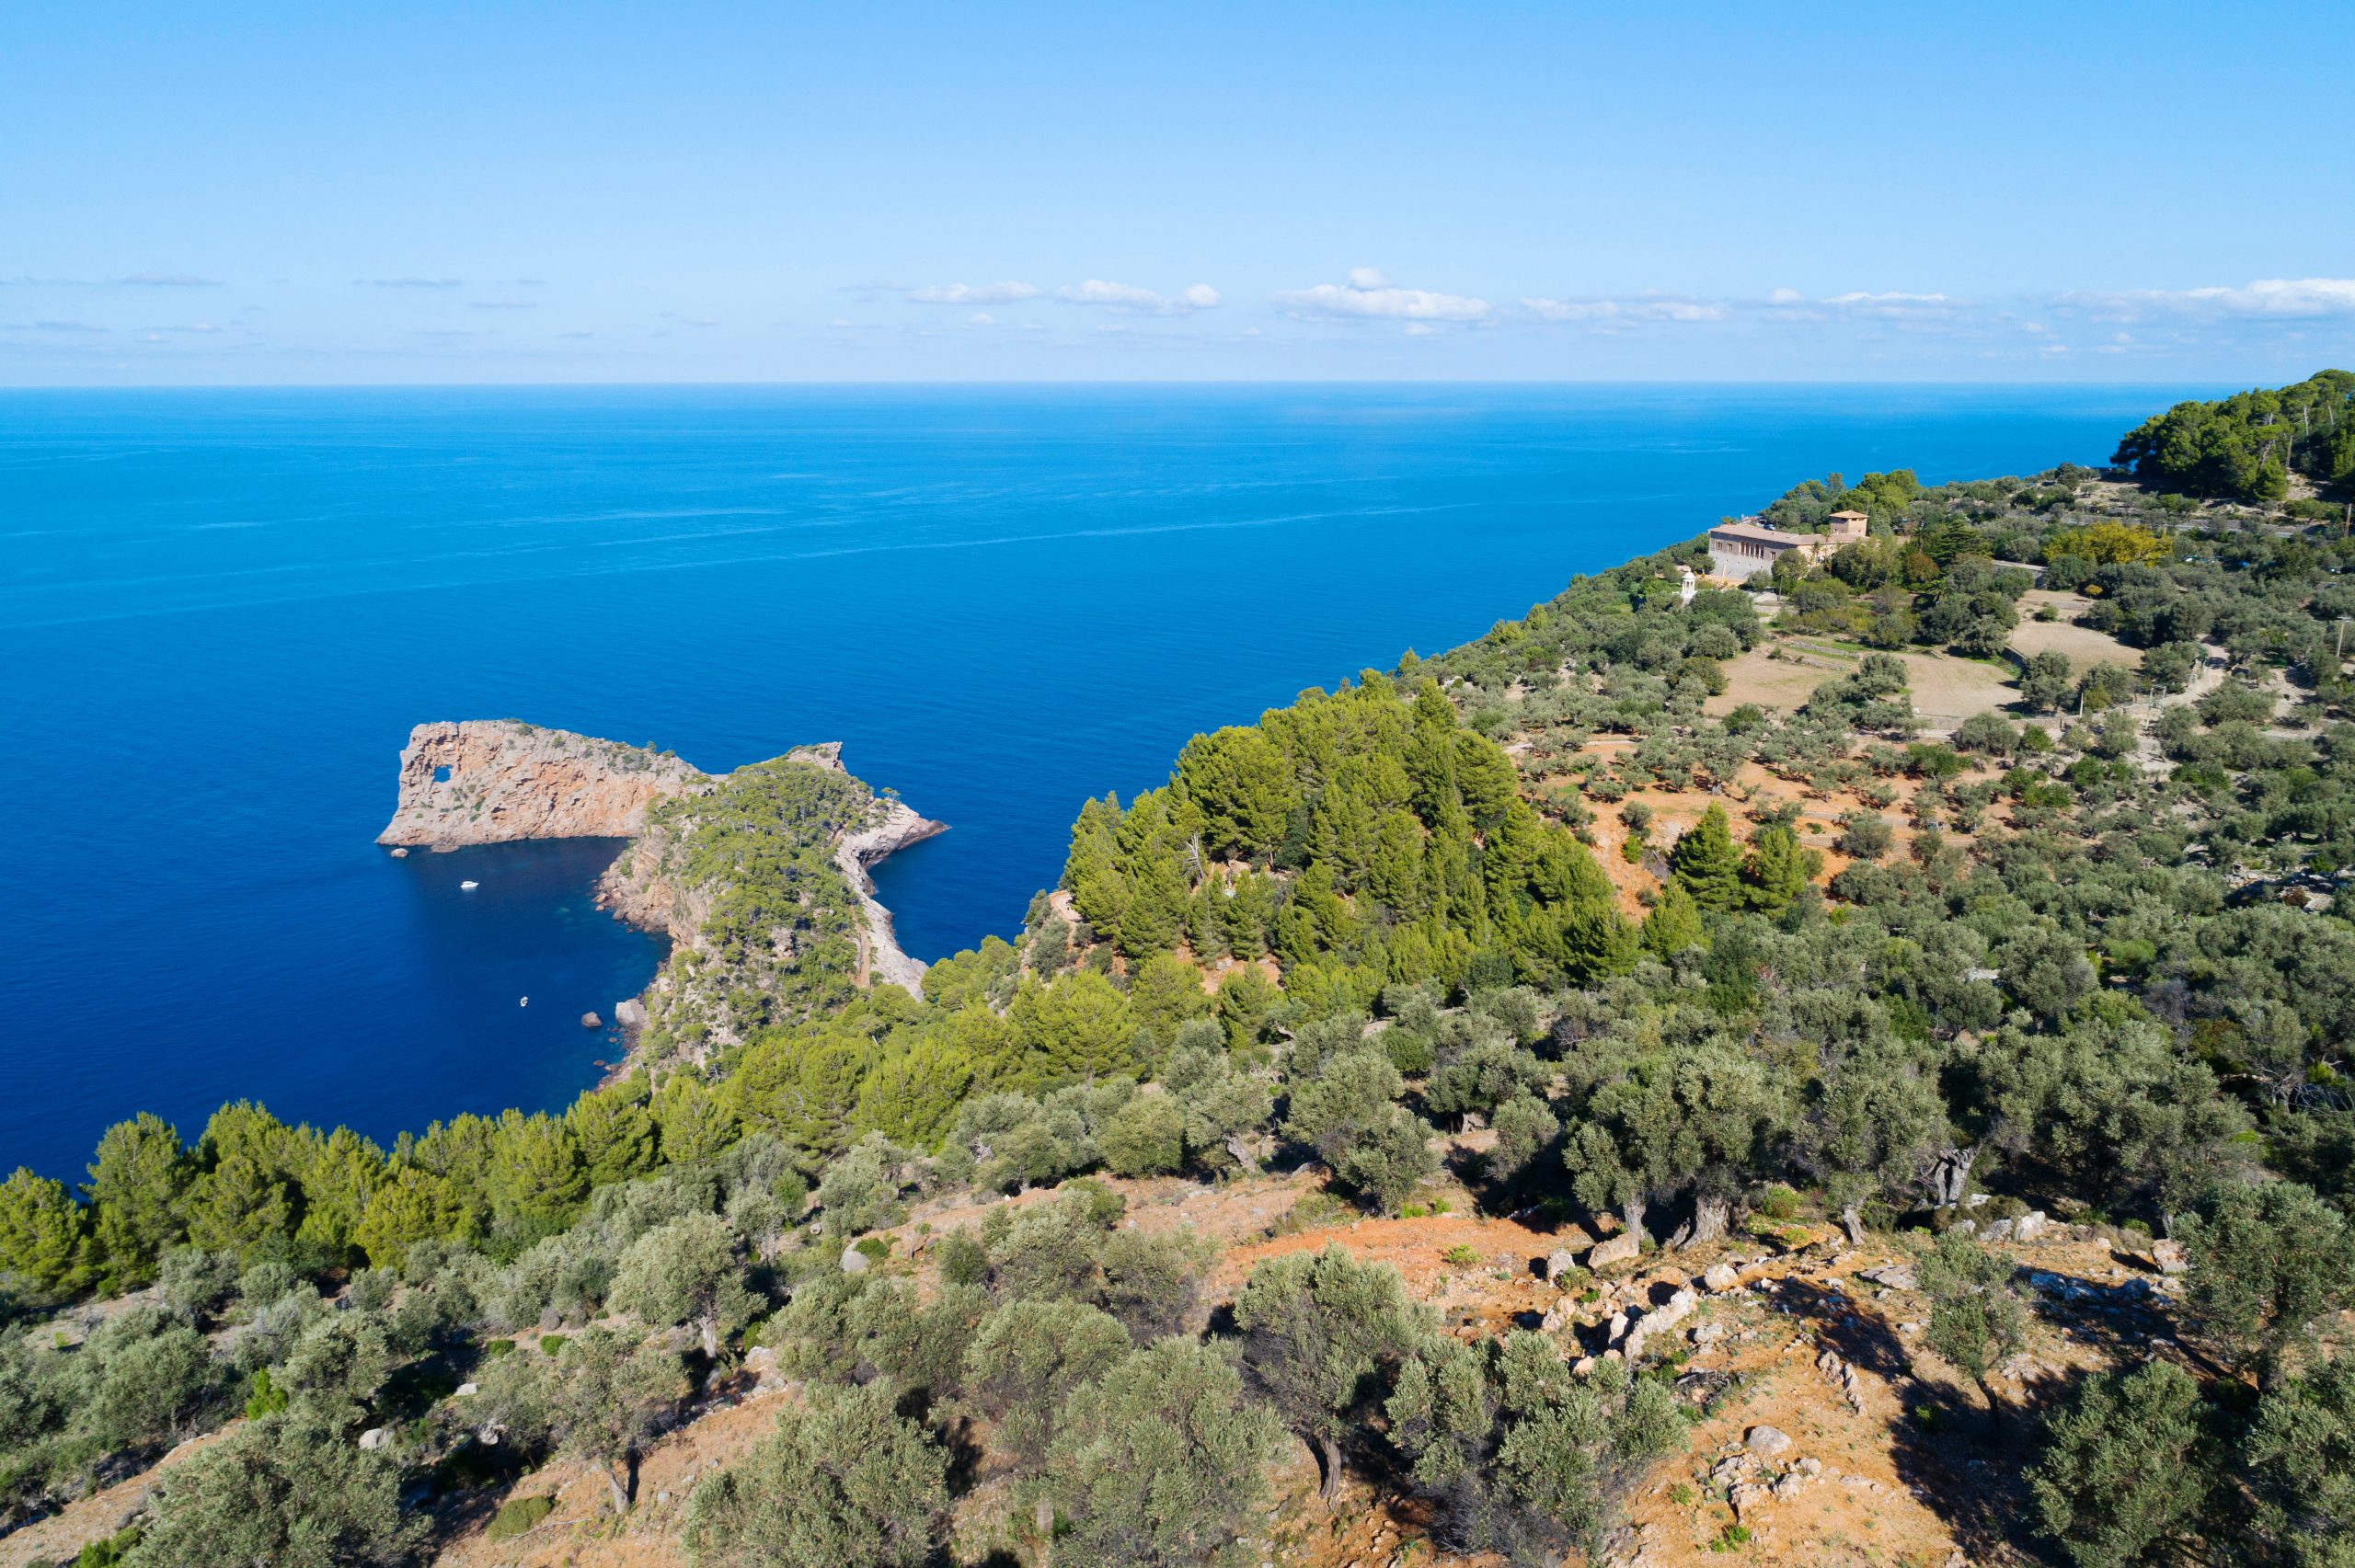 Mallorca, nominada a cinc categories dels World Travel Awards, entre elles la de turisme sostenible